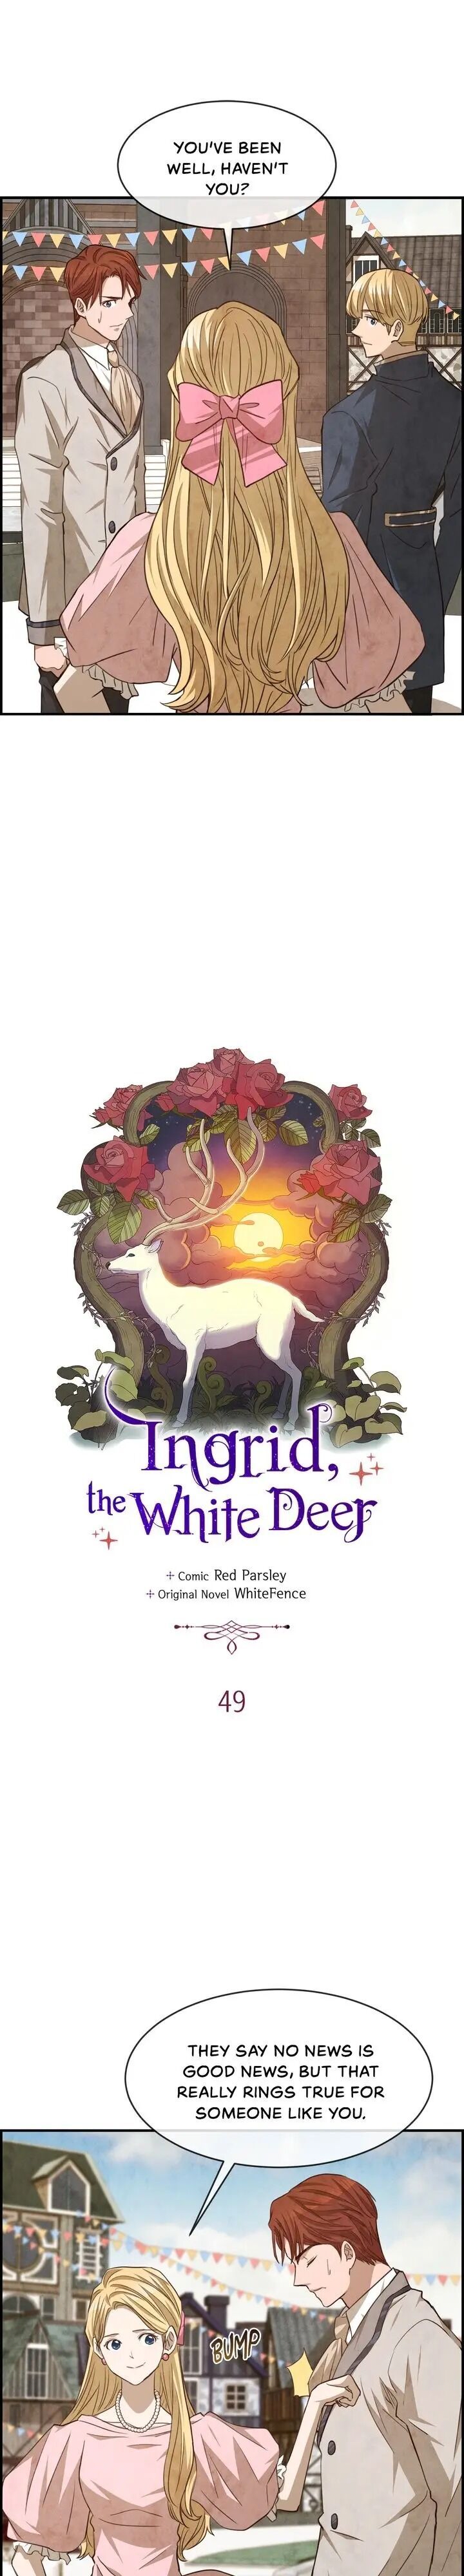 White Deer Ingrid! Chapter 049 page 4